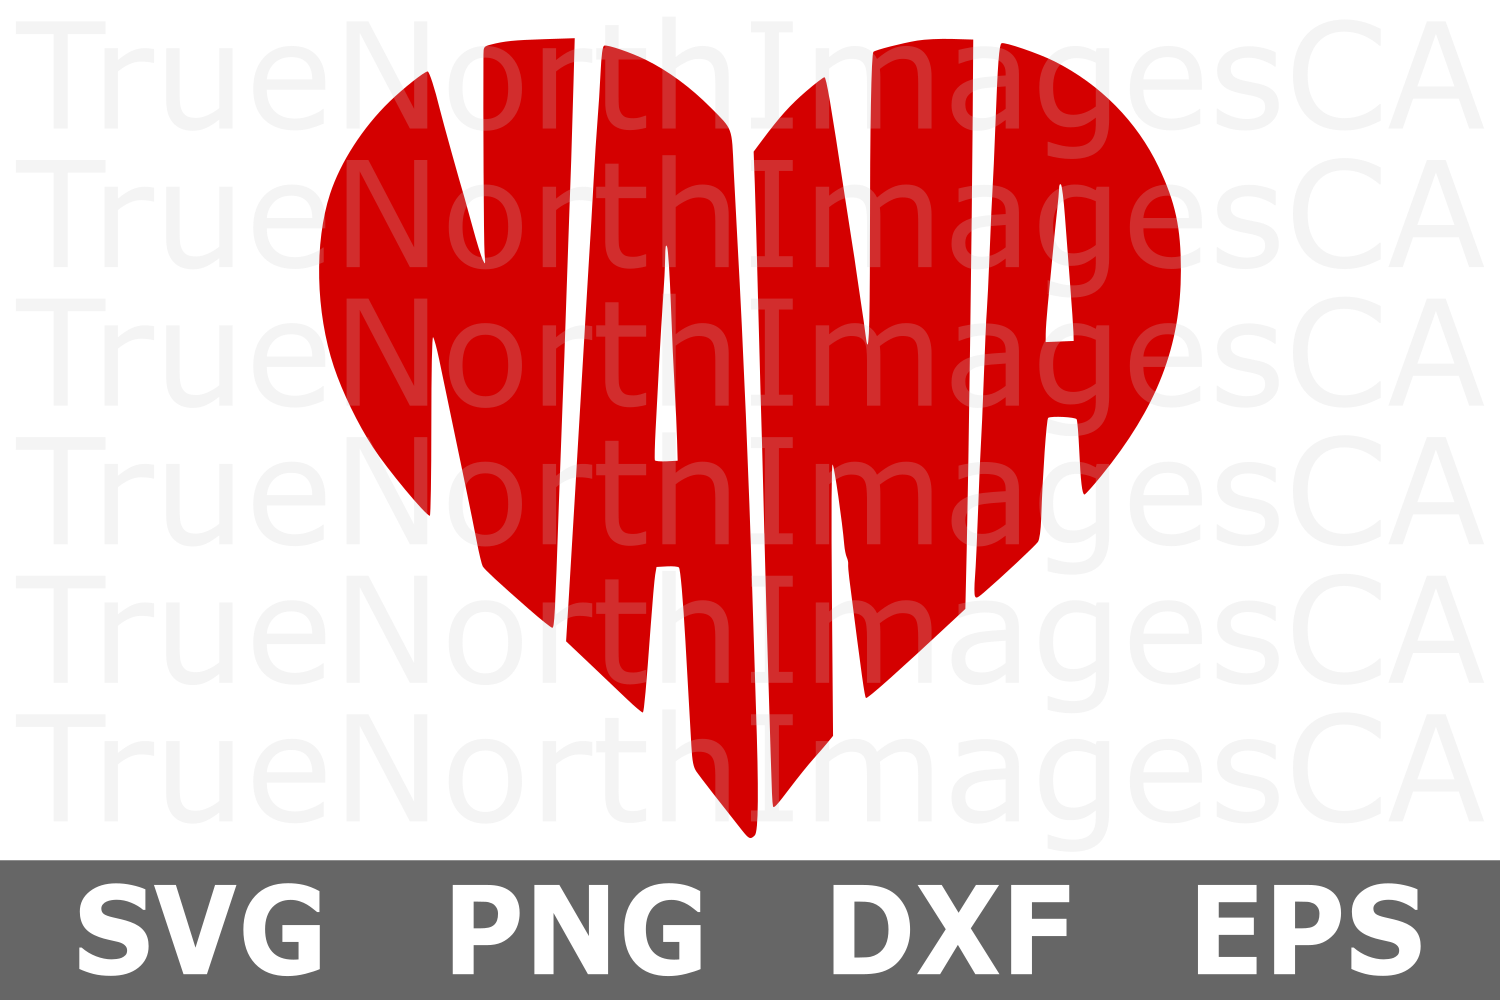 Free Free 105 Nana Svg Free SVG PNG EPS DXF File